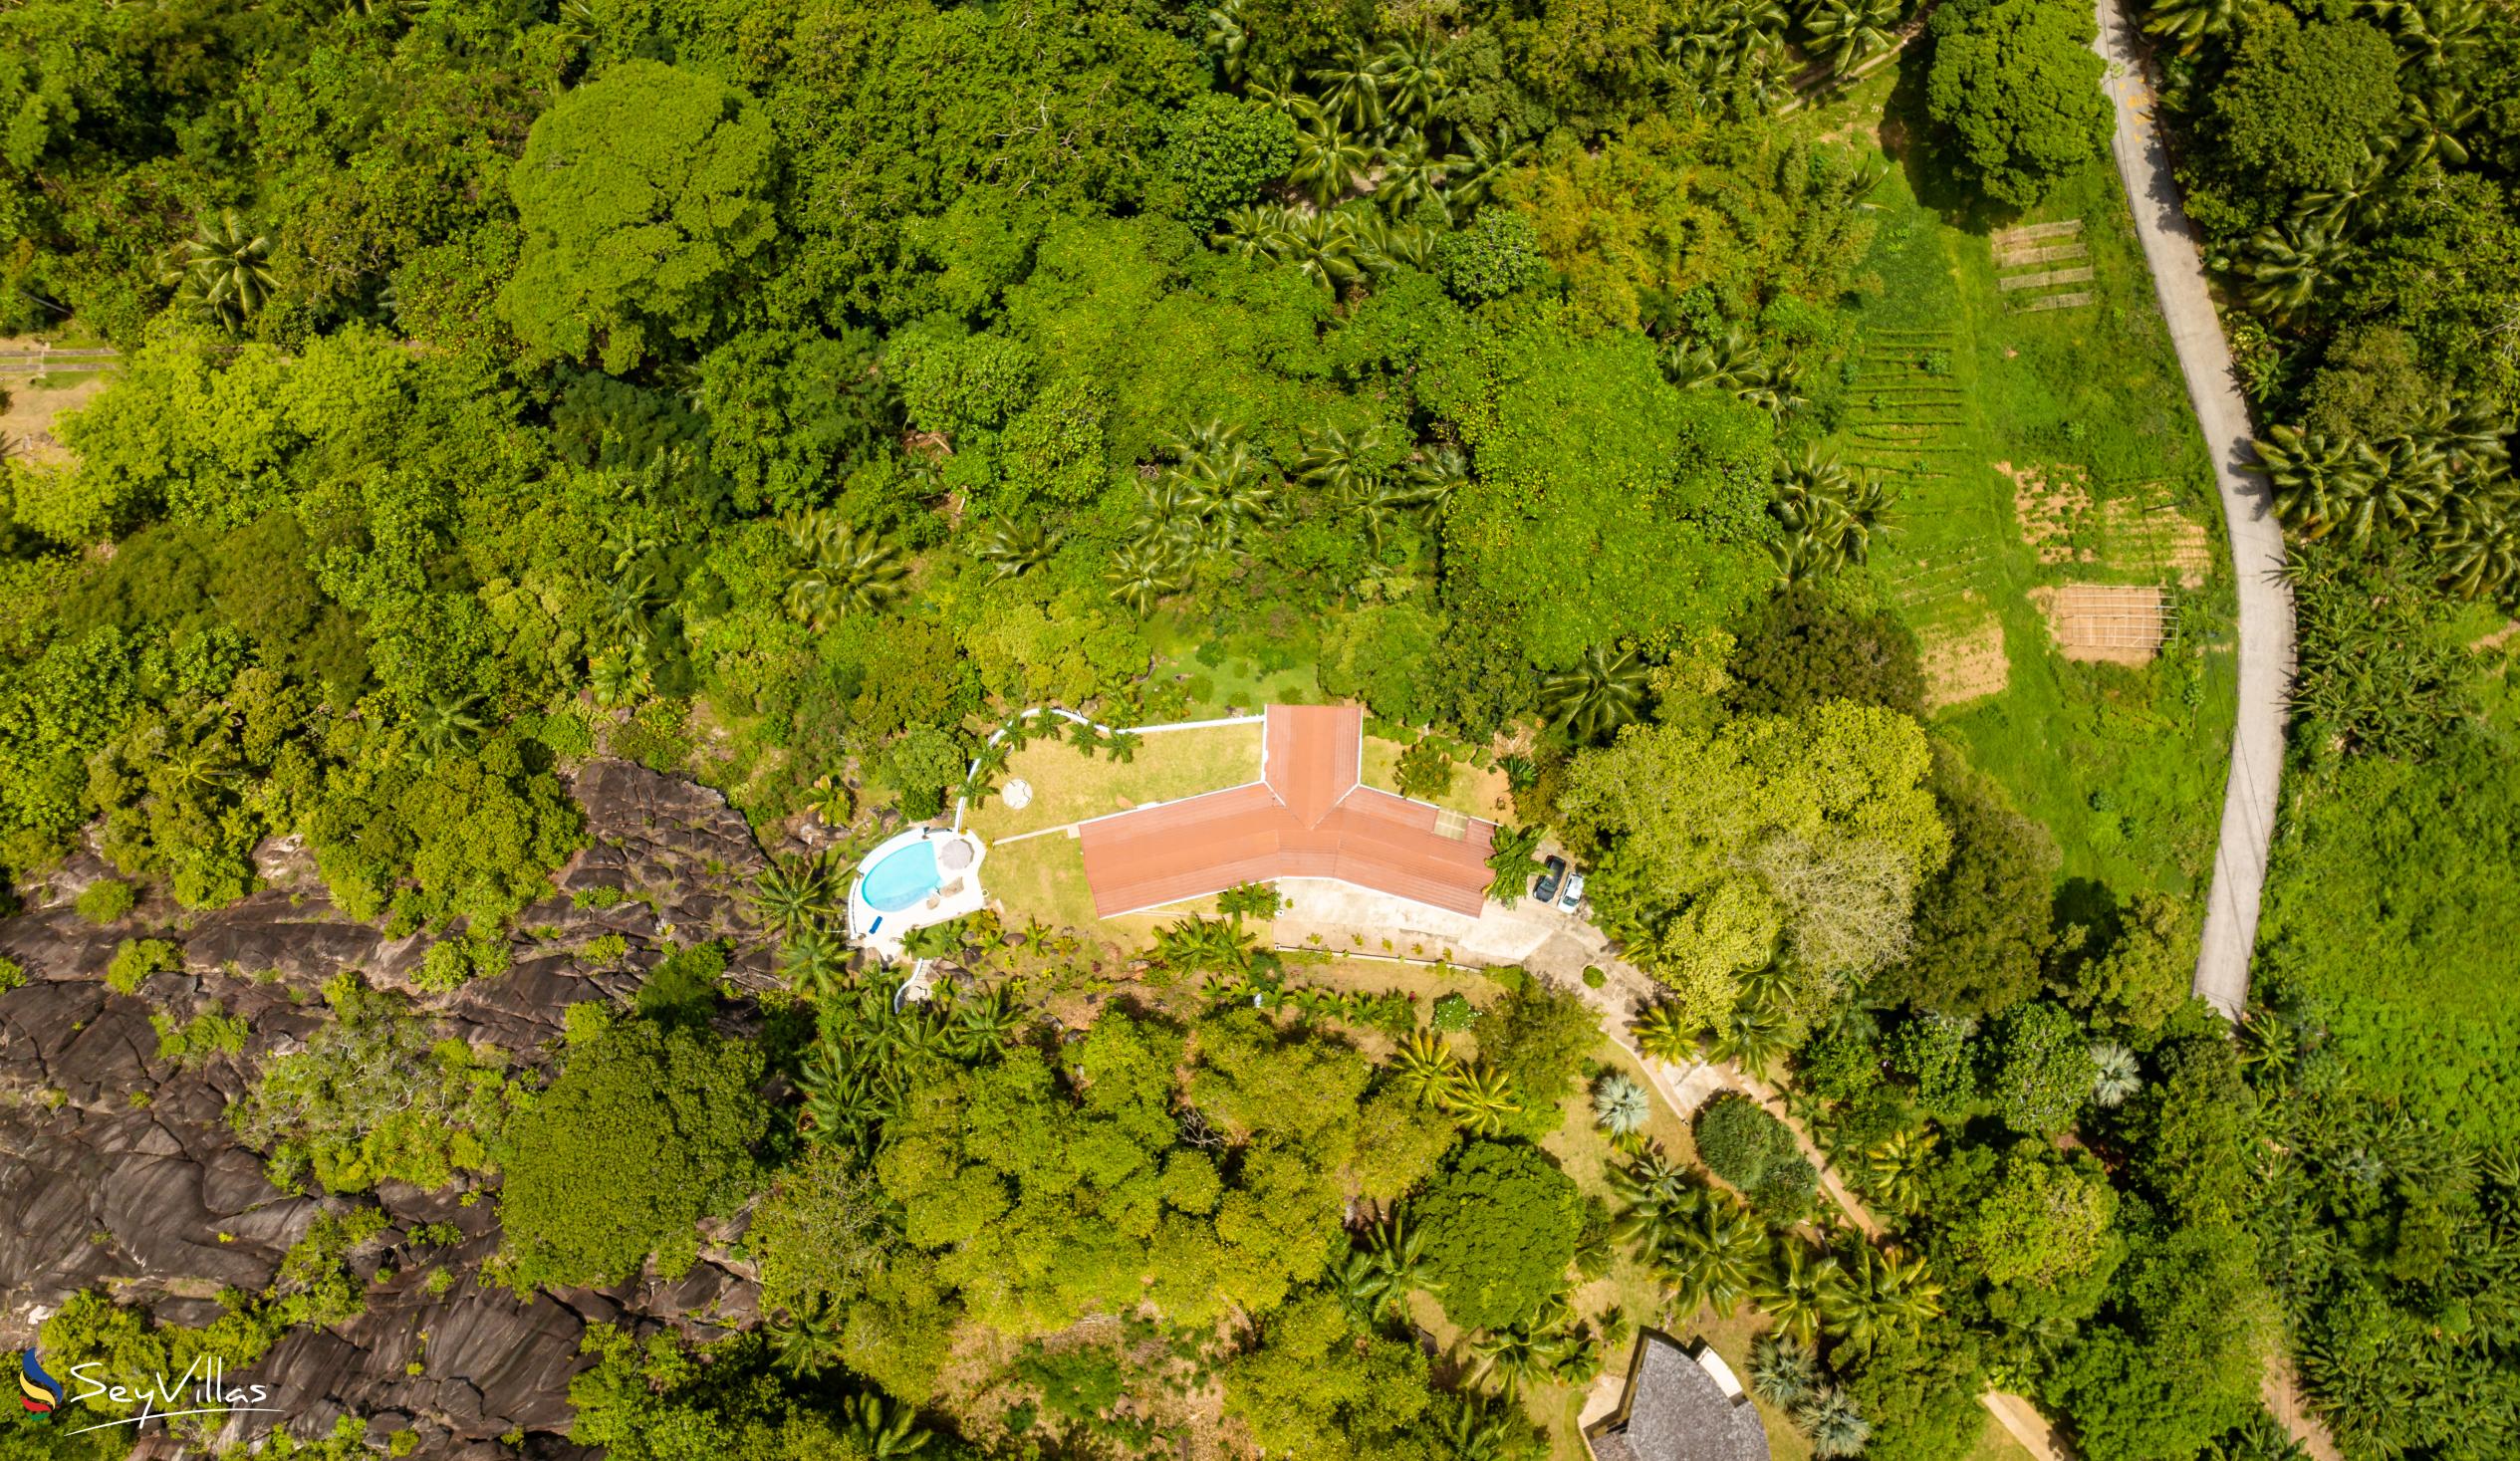 Foto 8: Villa Gazebo - Extérieur - Mahé (Seychelles)